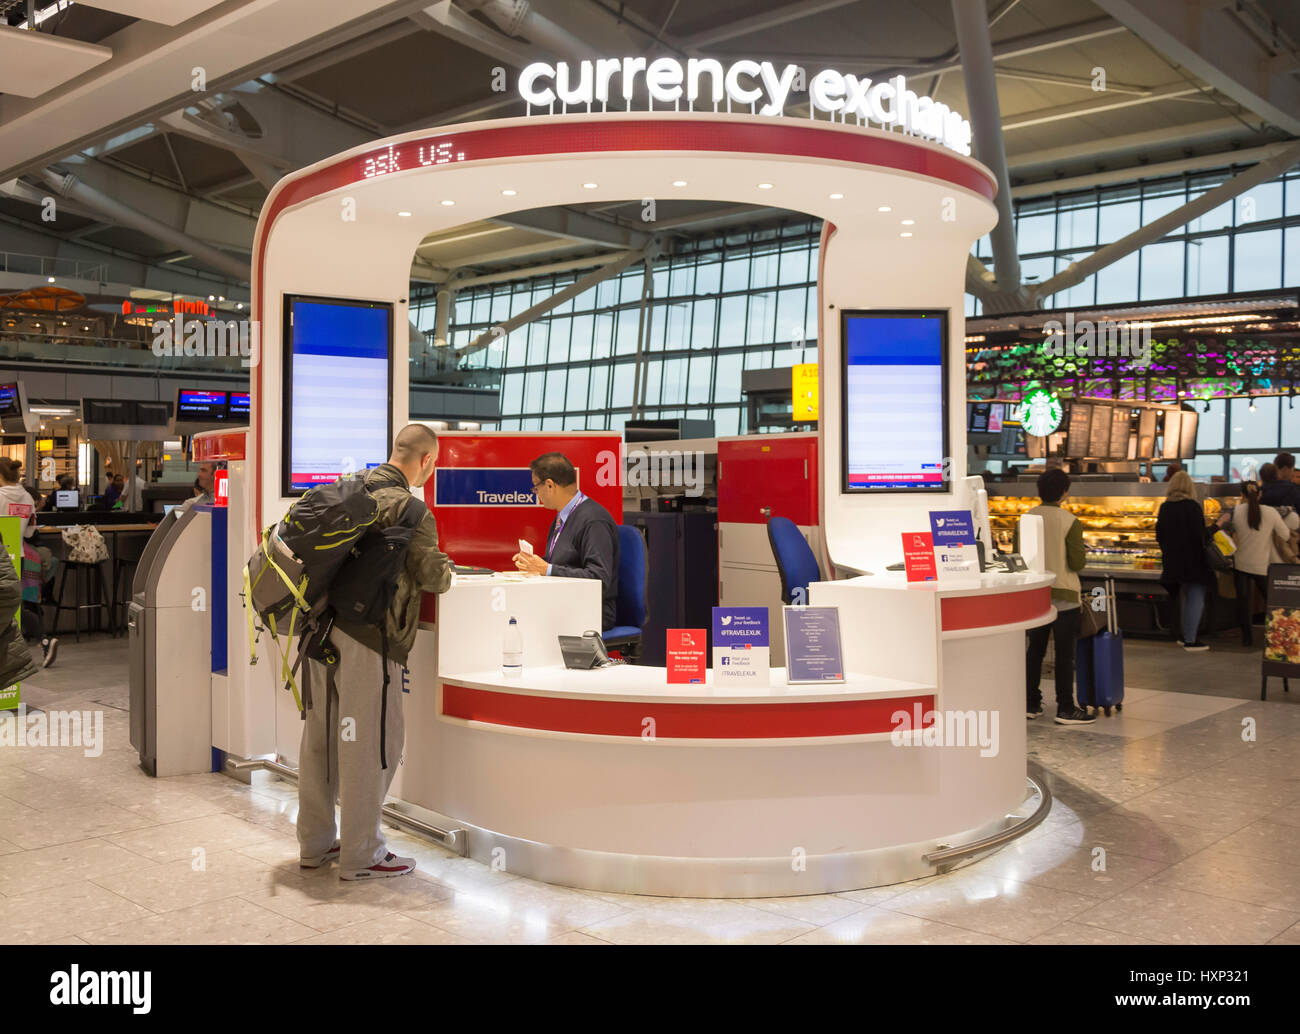 Cambio valuta chiosco in partenza lounge al Terminal 5 di Londra Heathrow Airport. London Borough of Hounslow, Greater London, England, Regno Unito Foto Stock